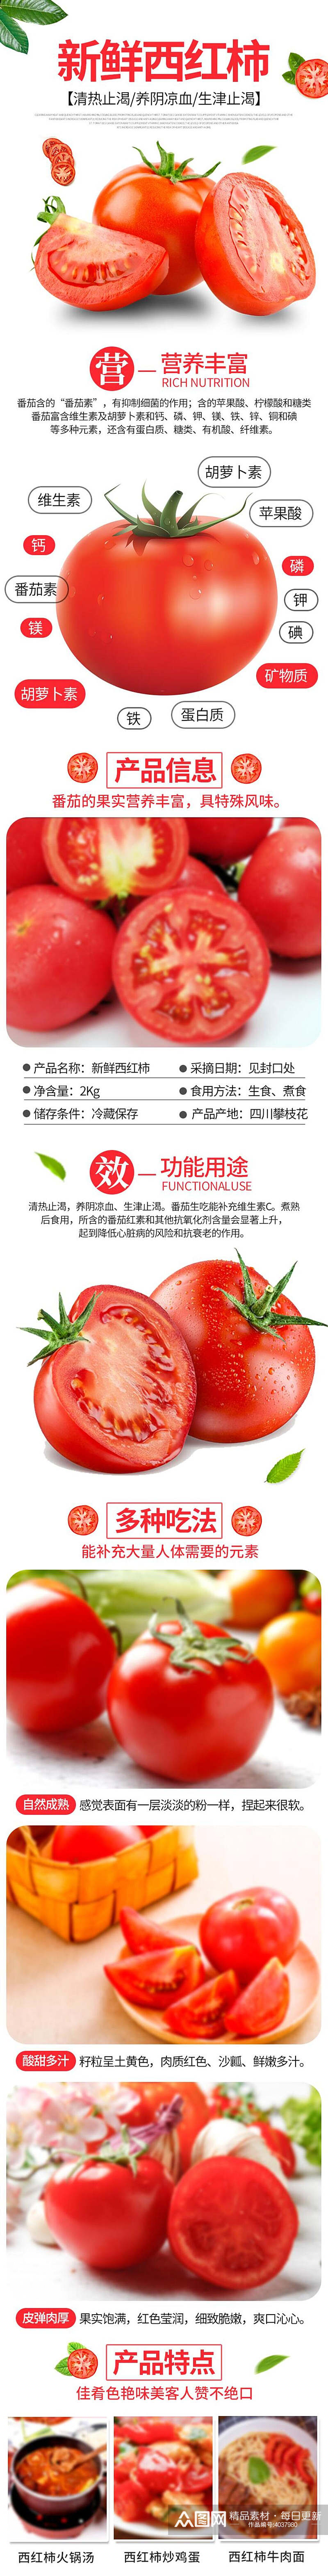 鲜香西红柿蔬菜手机版详情页素材